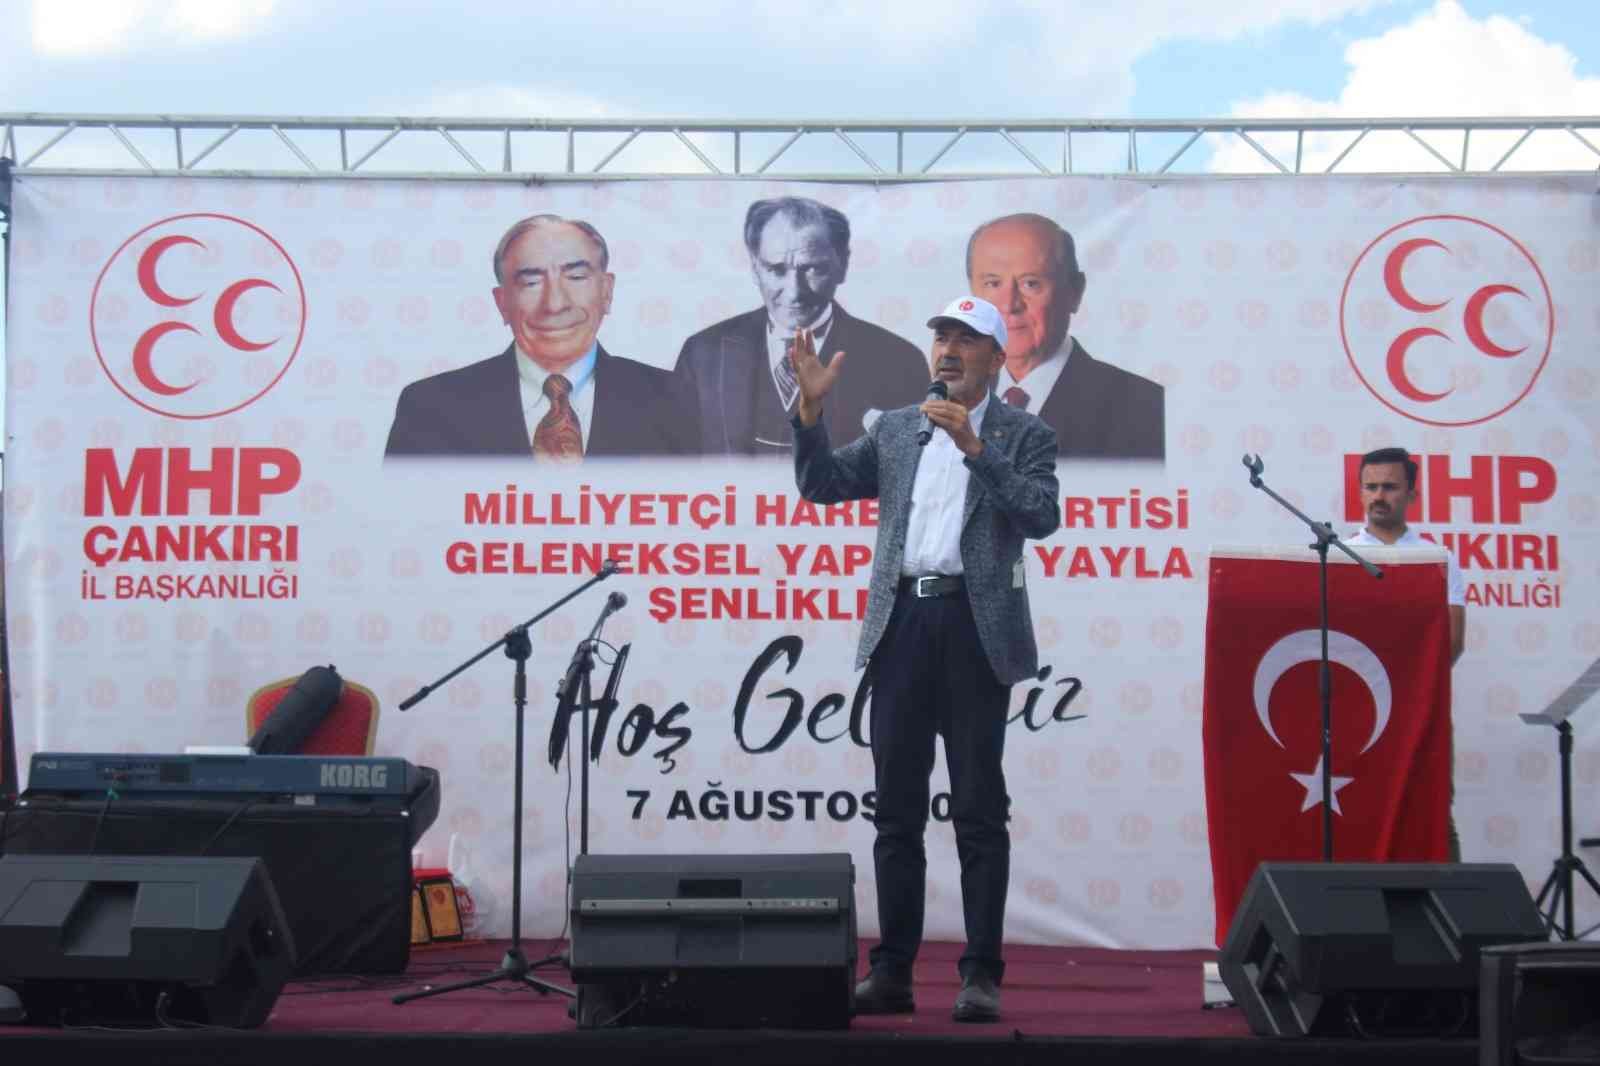 MHP Genel Başkan Yardımcısı Yıldırım: "Hedefimiz, bu enflasyona fakiri fukarayı emekliyi ve dar gelirliyi ezdirmemek"